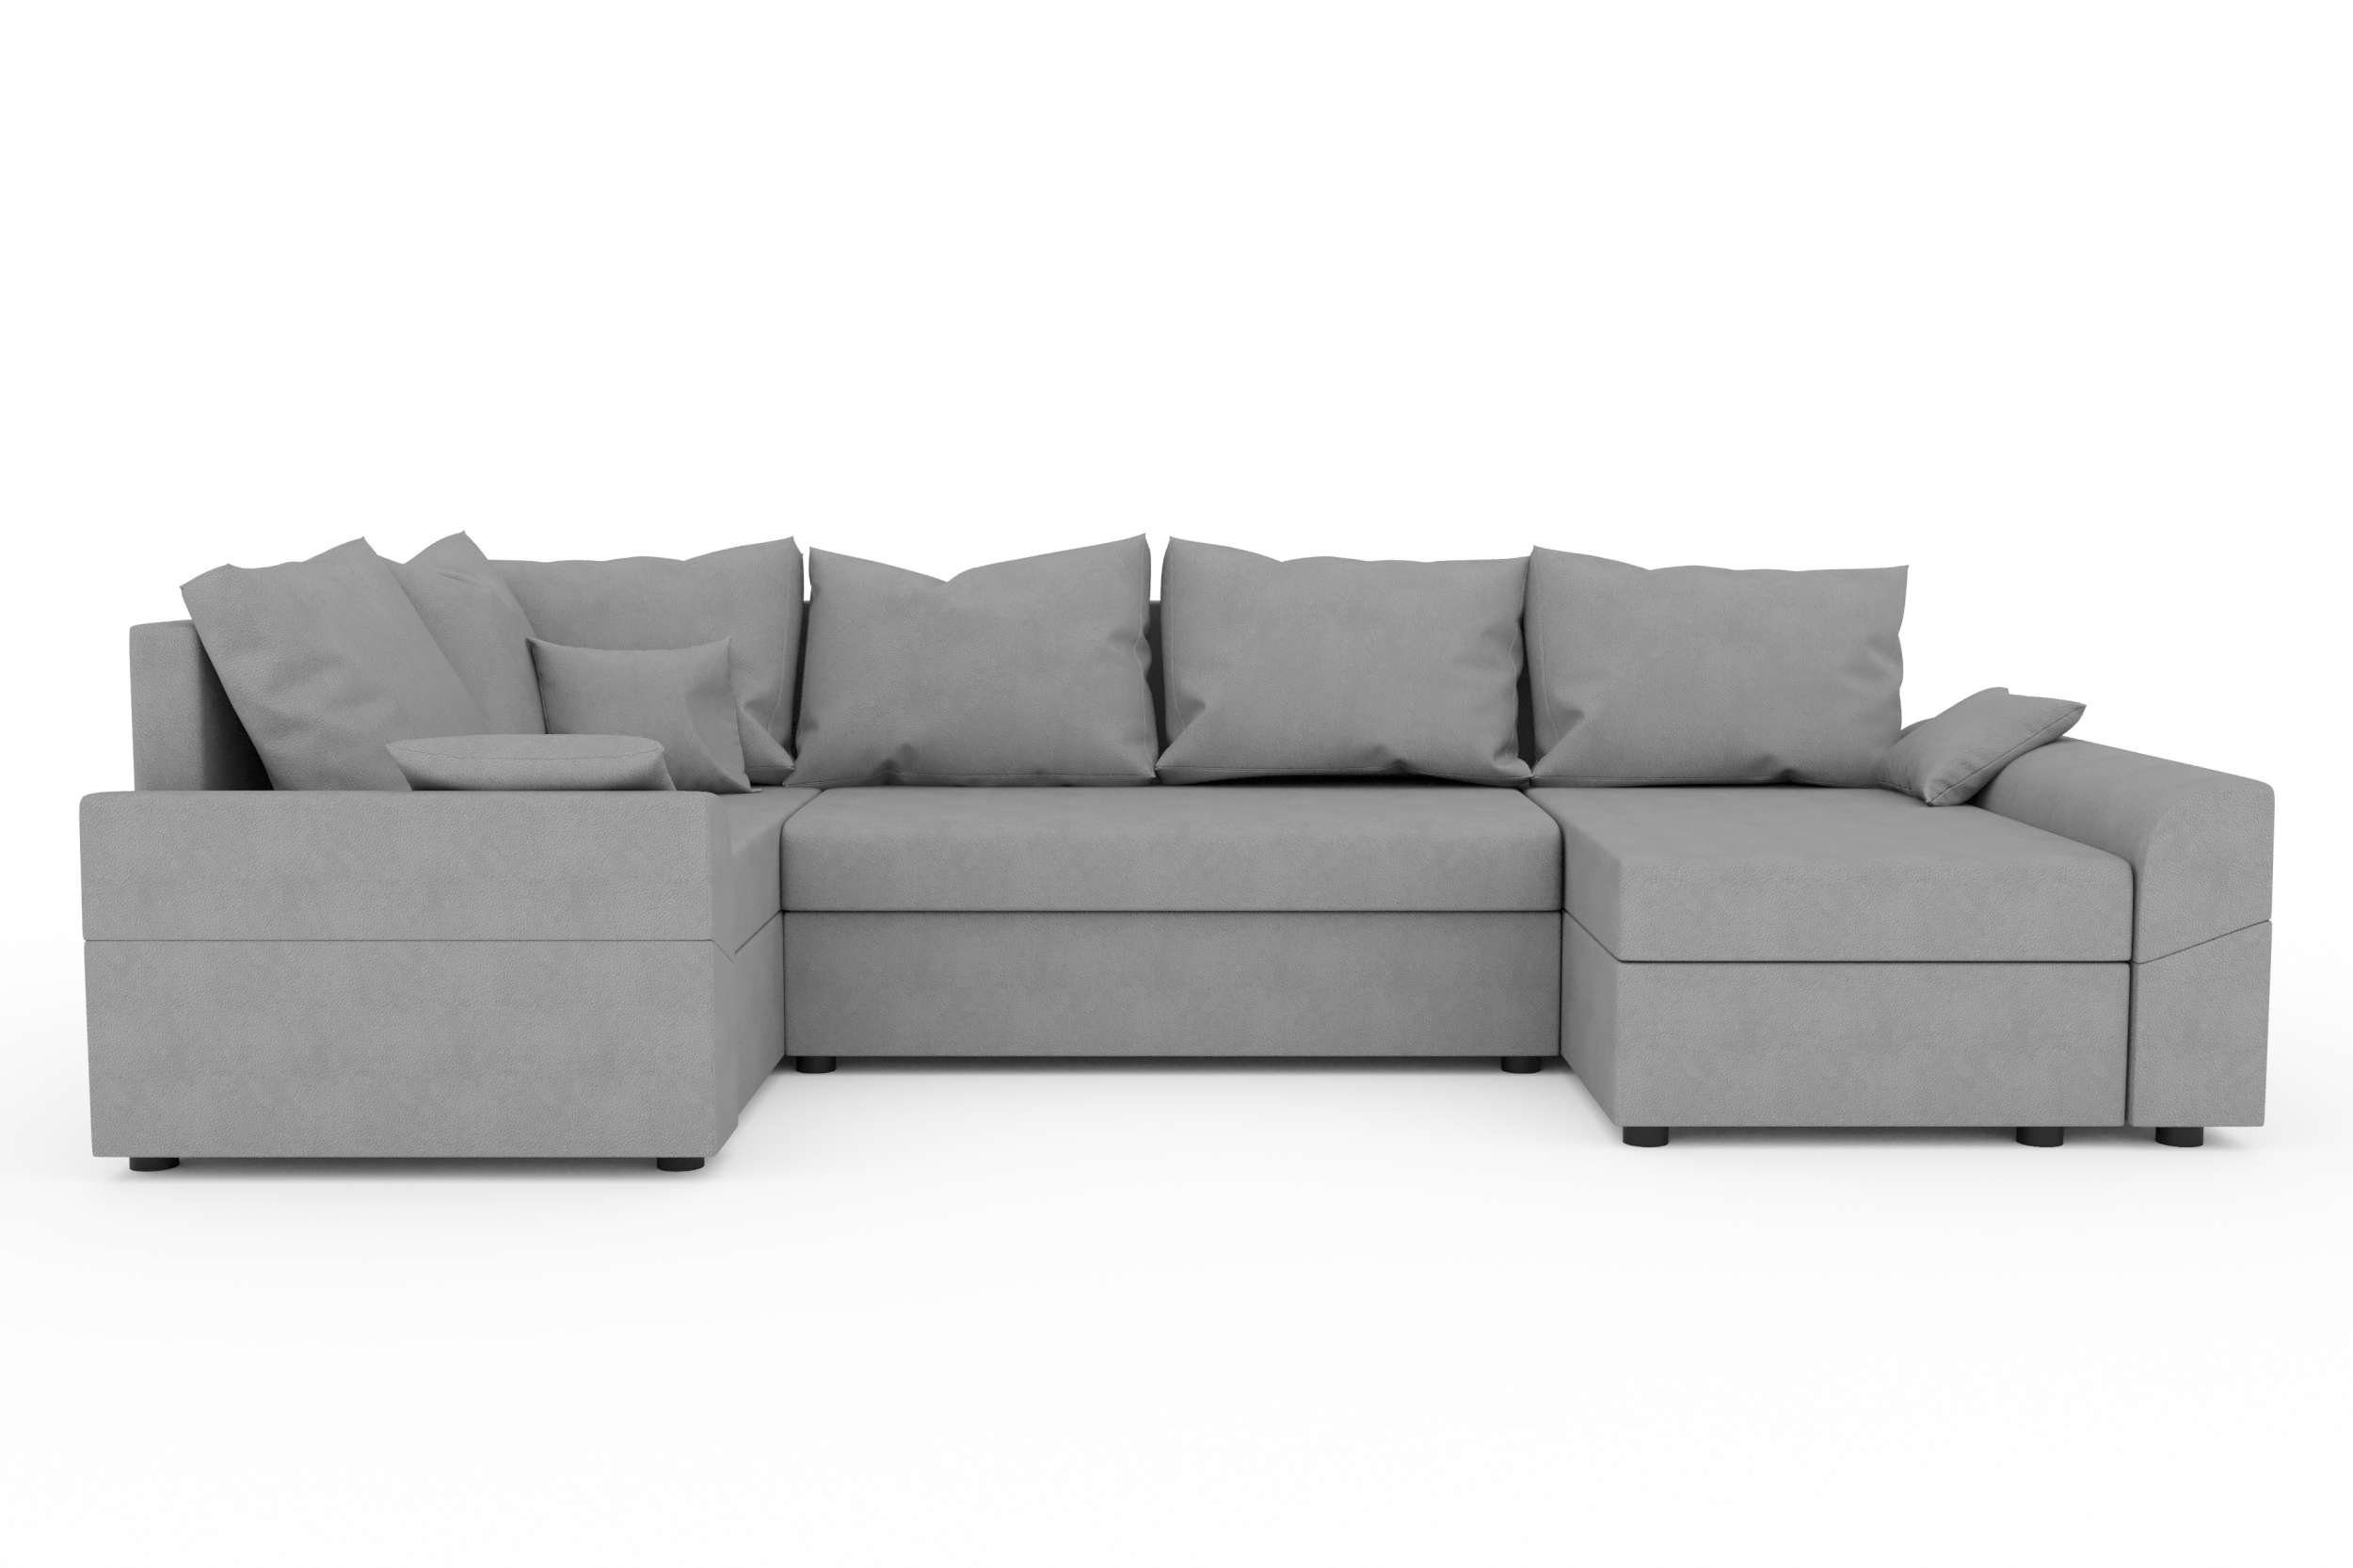 Bettfunktion, Modern Eckcouch, U-Form, mit Bailey, Wohnlandschaft mit Bettkasten, Stylefy Sitzkomfort, Design Sofa,